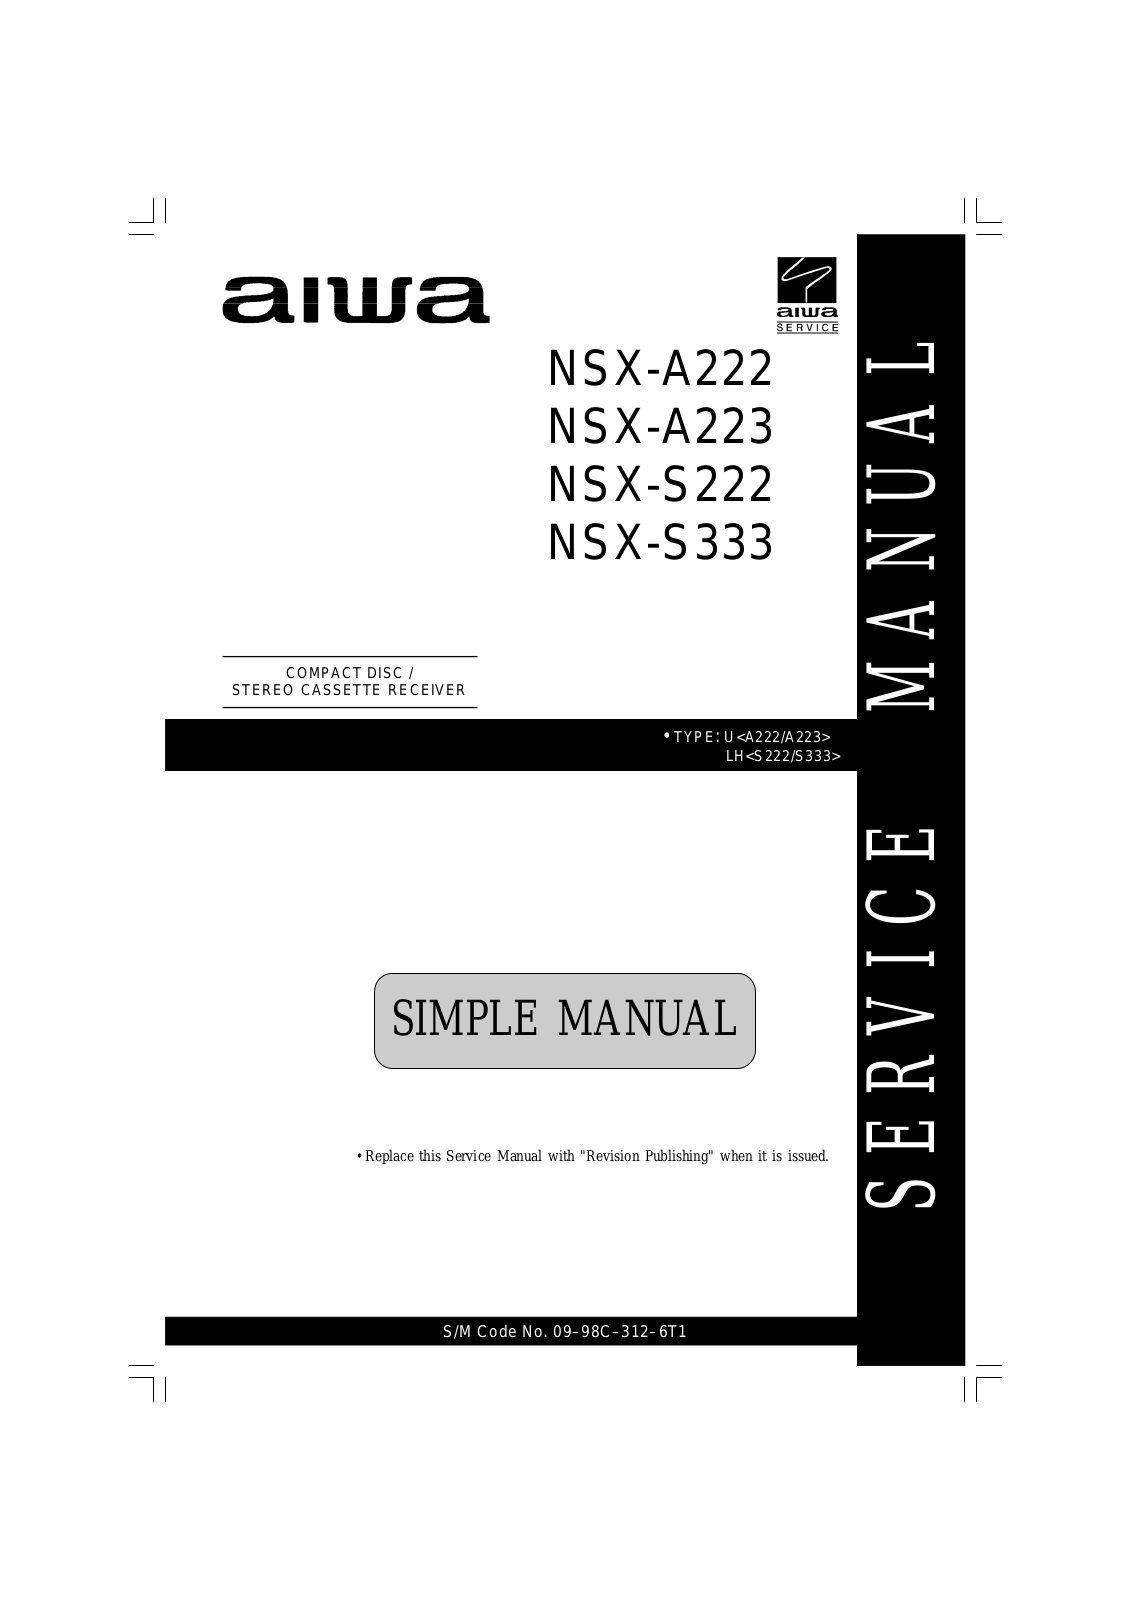 Aiwa NSX-S333, NSX-S222, NSX-A223, NSX-A222 User Manual